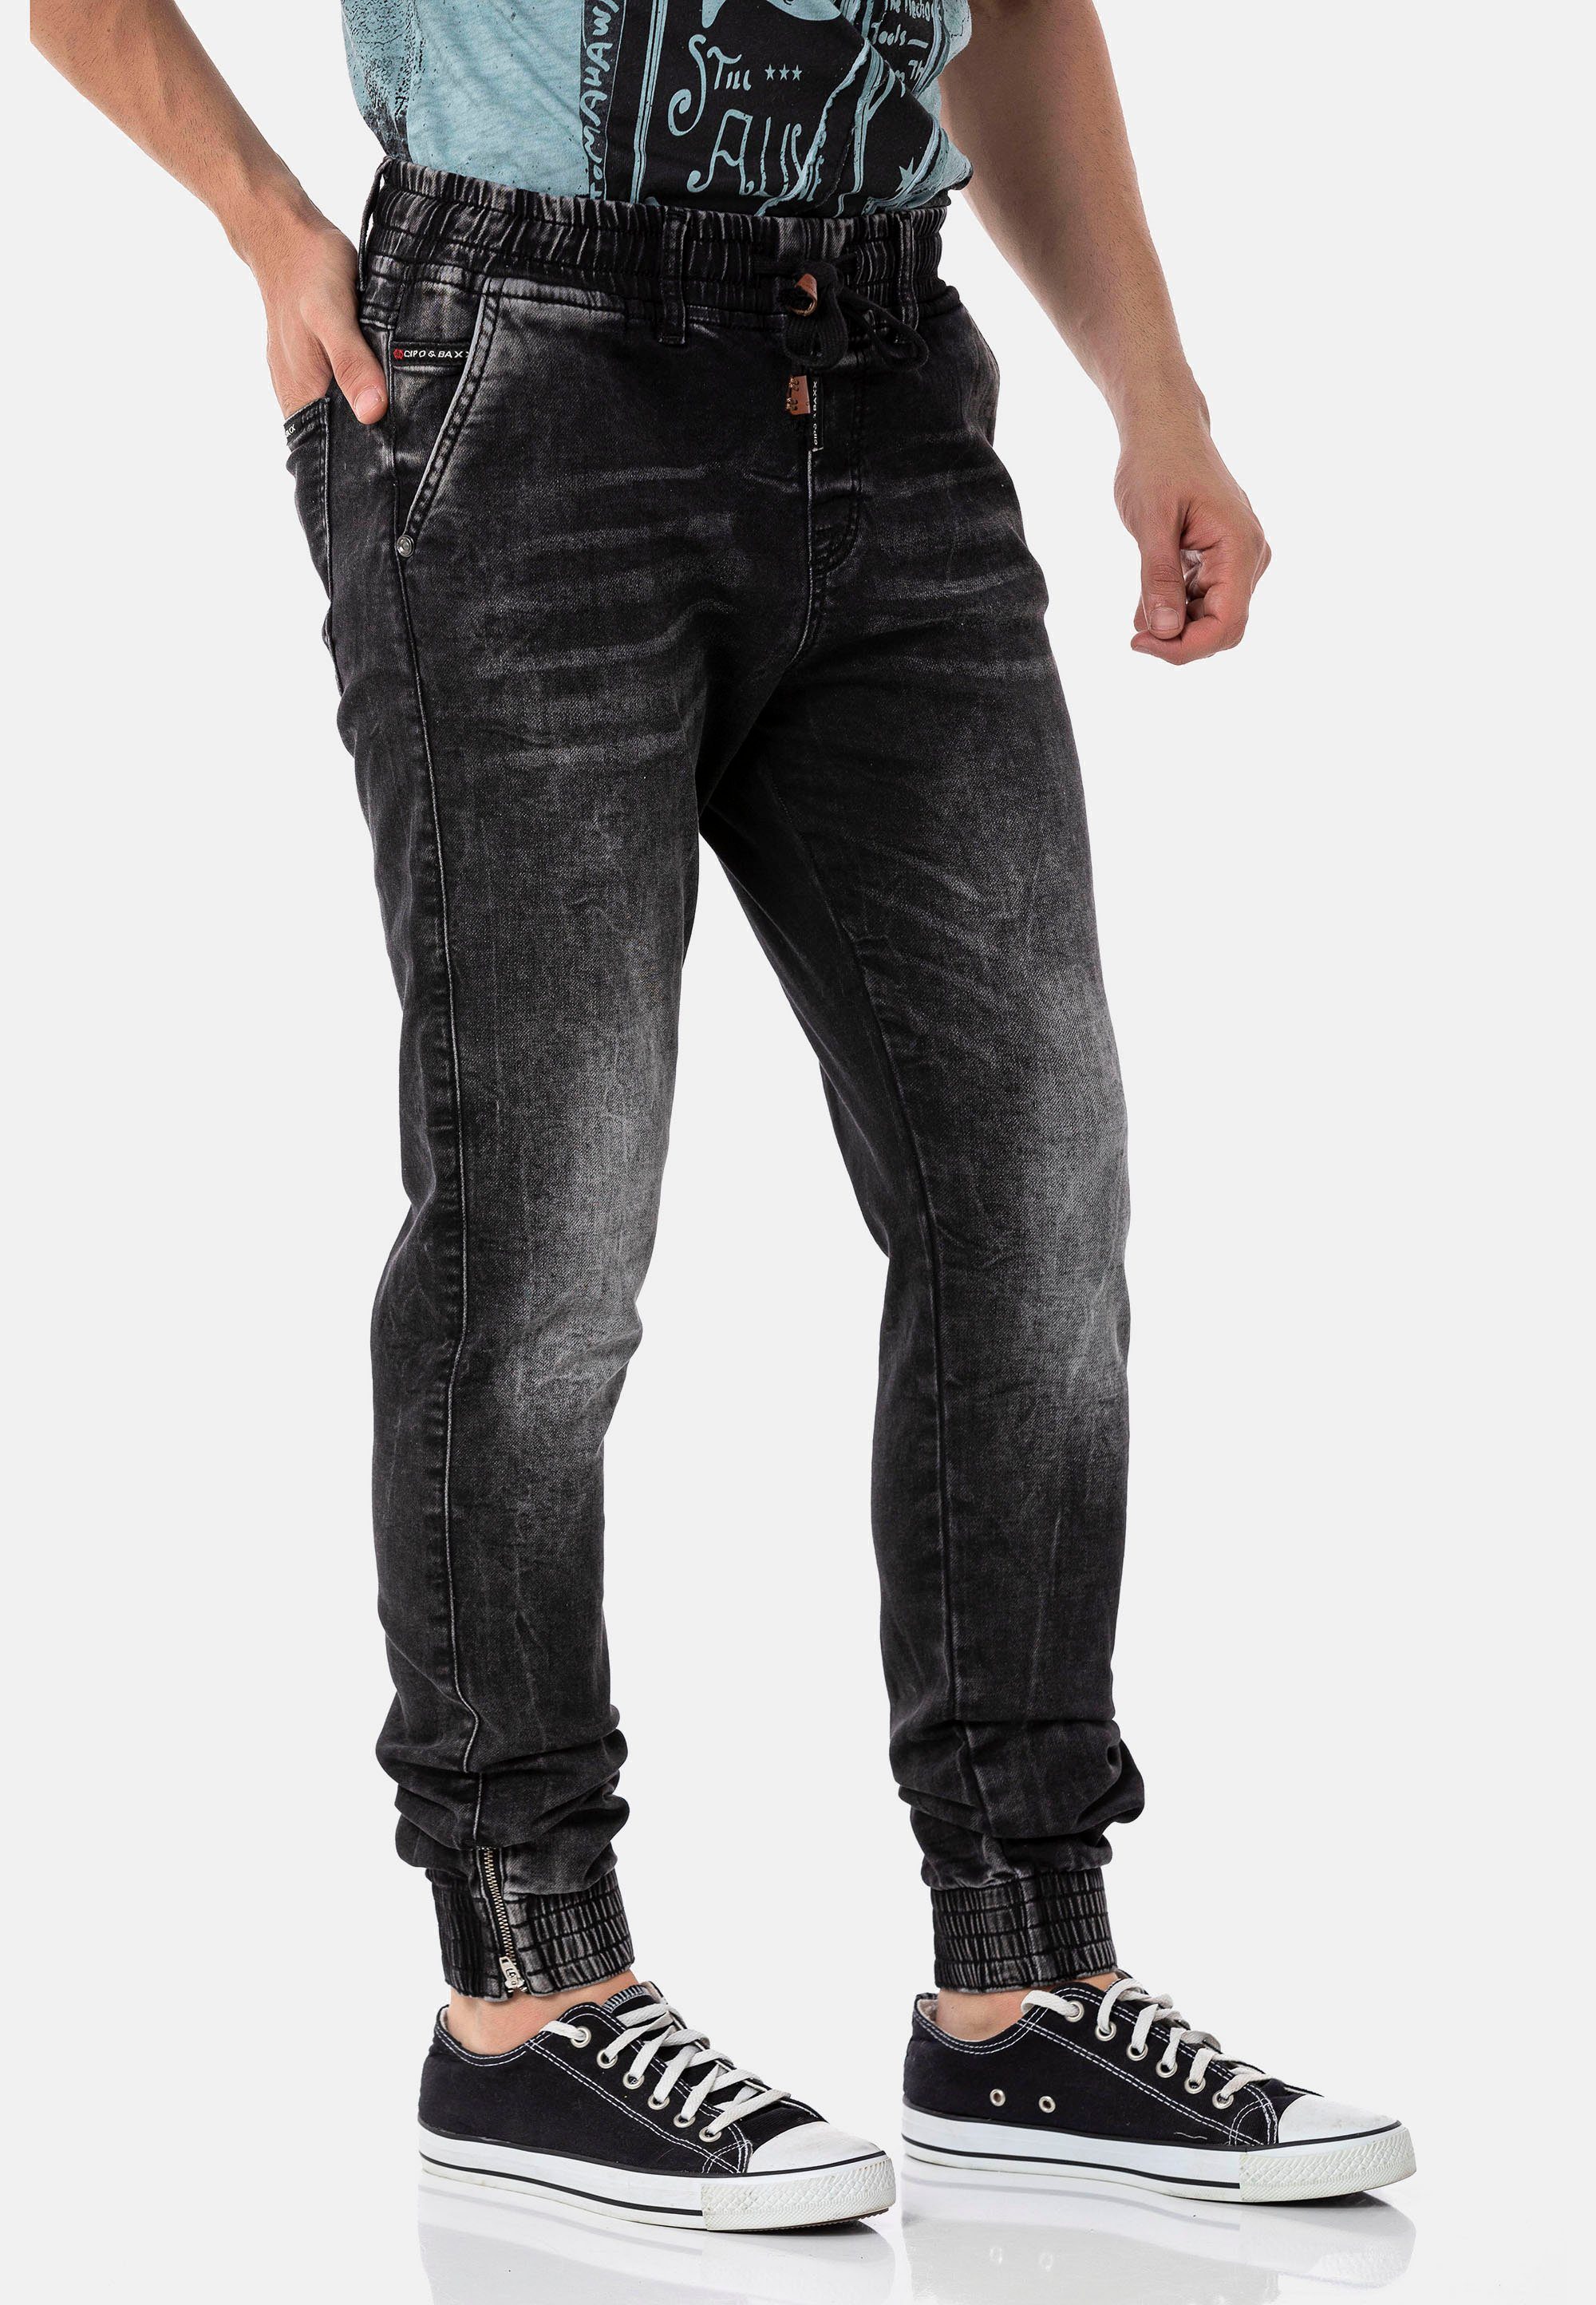 Dehnbund mit Bequeme komfortablem schwarz Baxx Cipo Jeans &